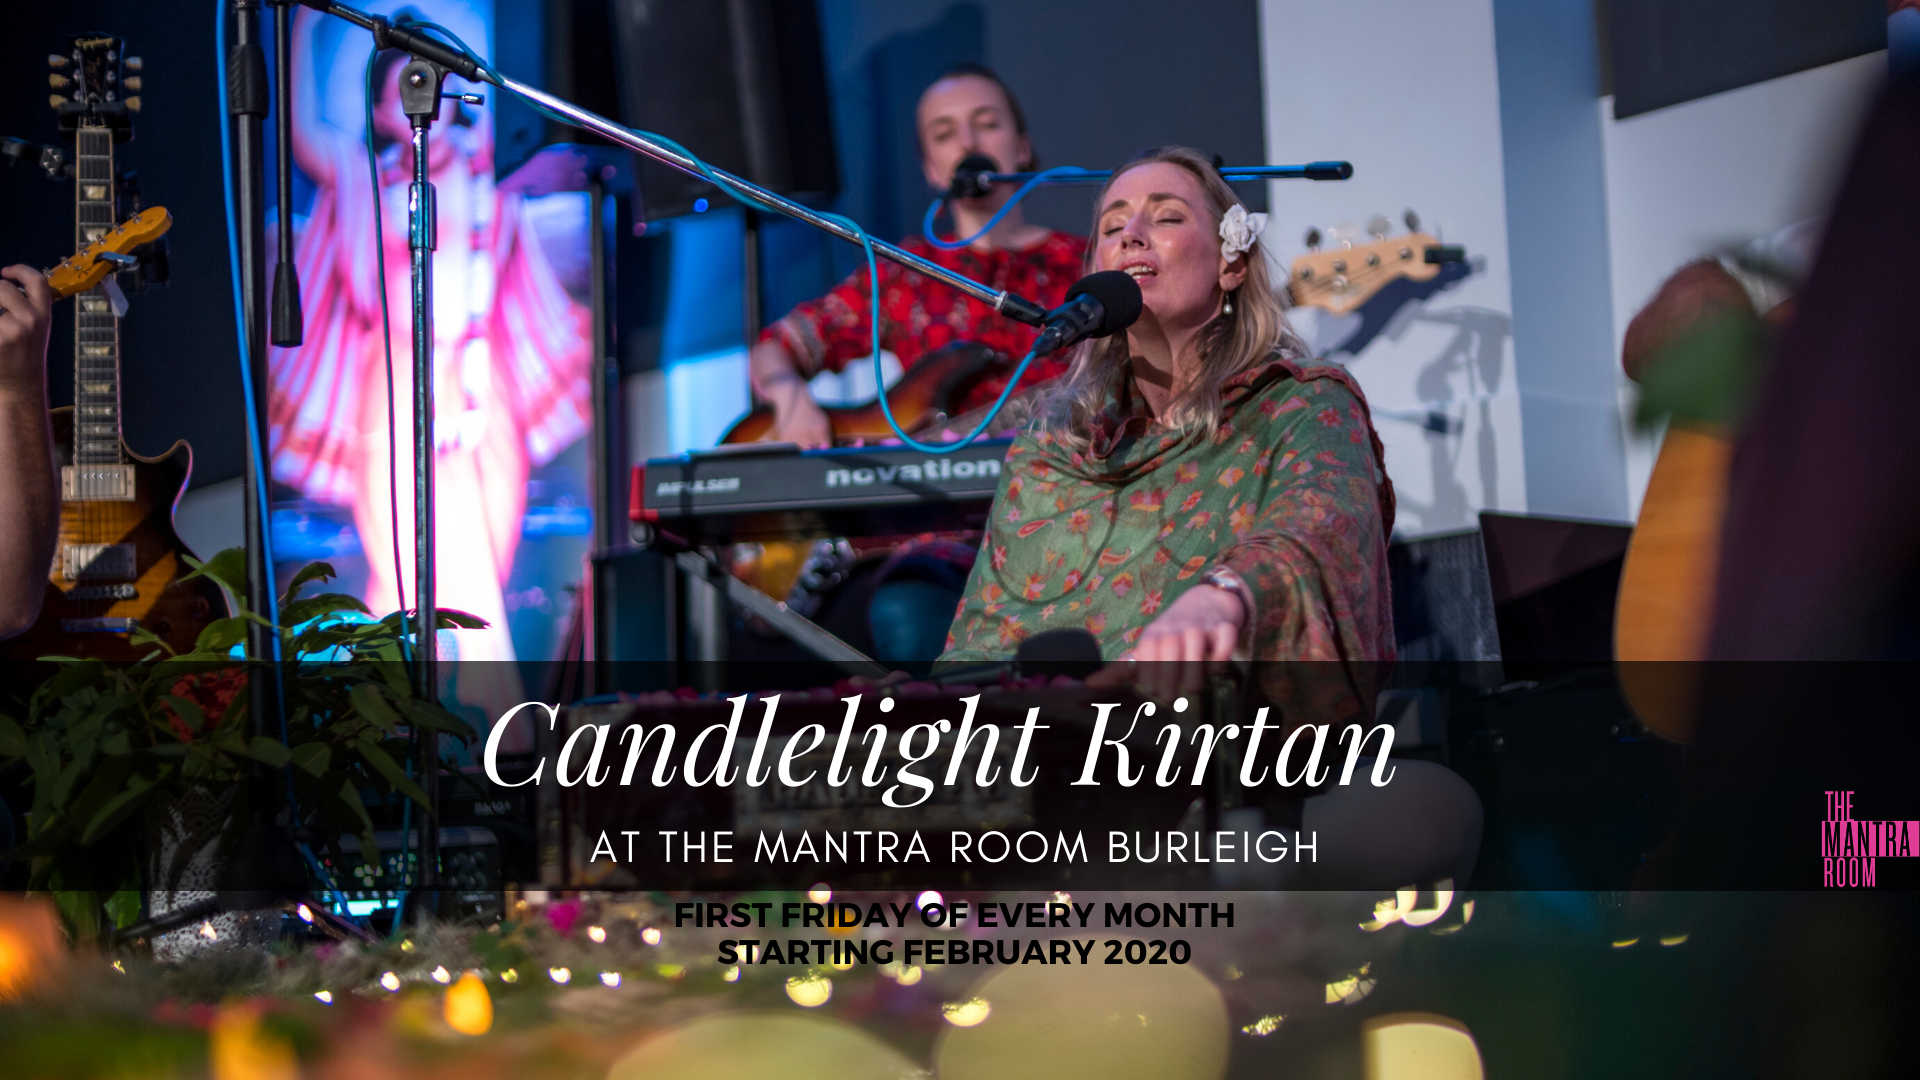 Candlelight Kirtan at The Mantra Room Burleigh